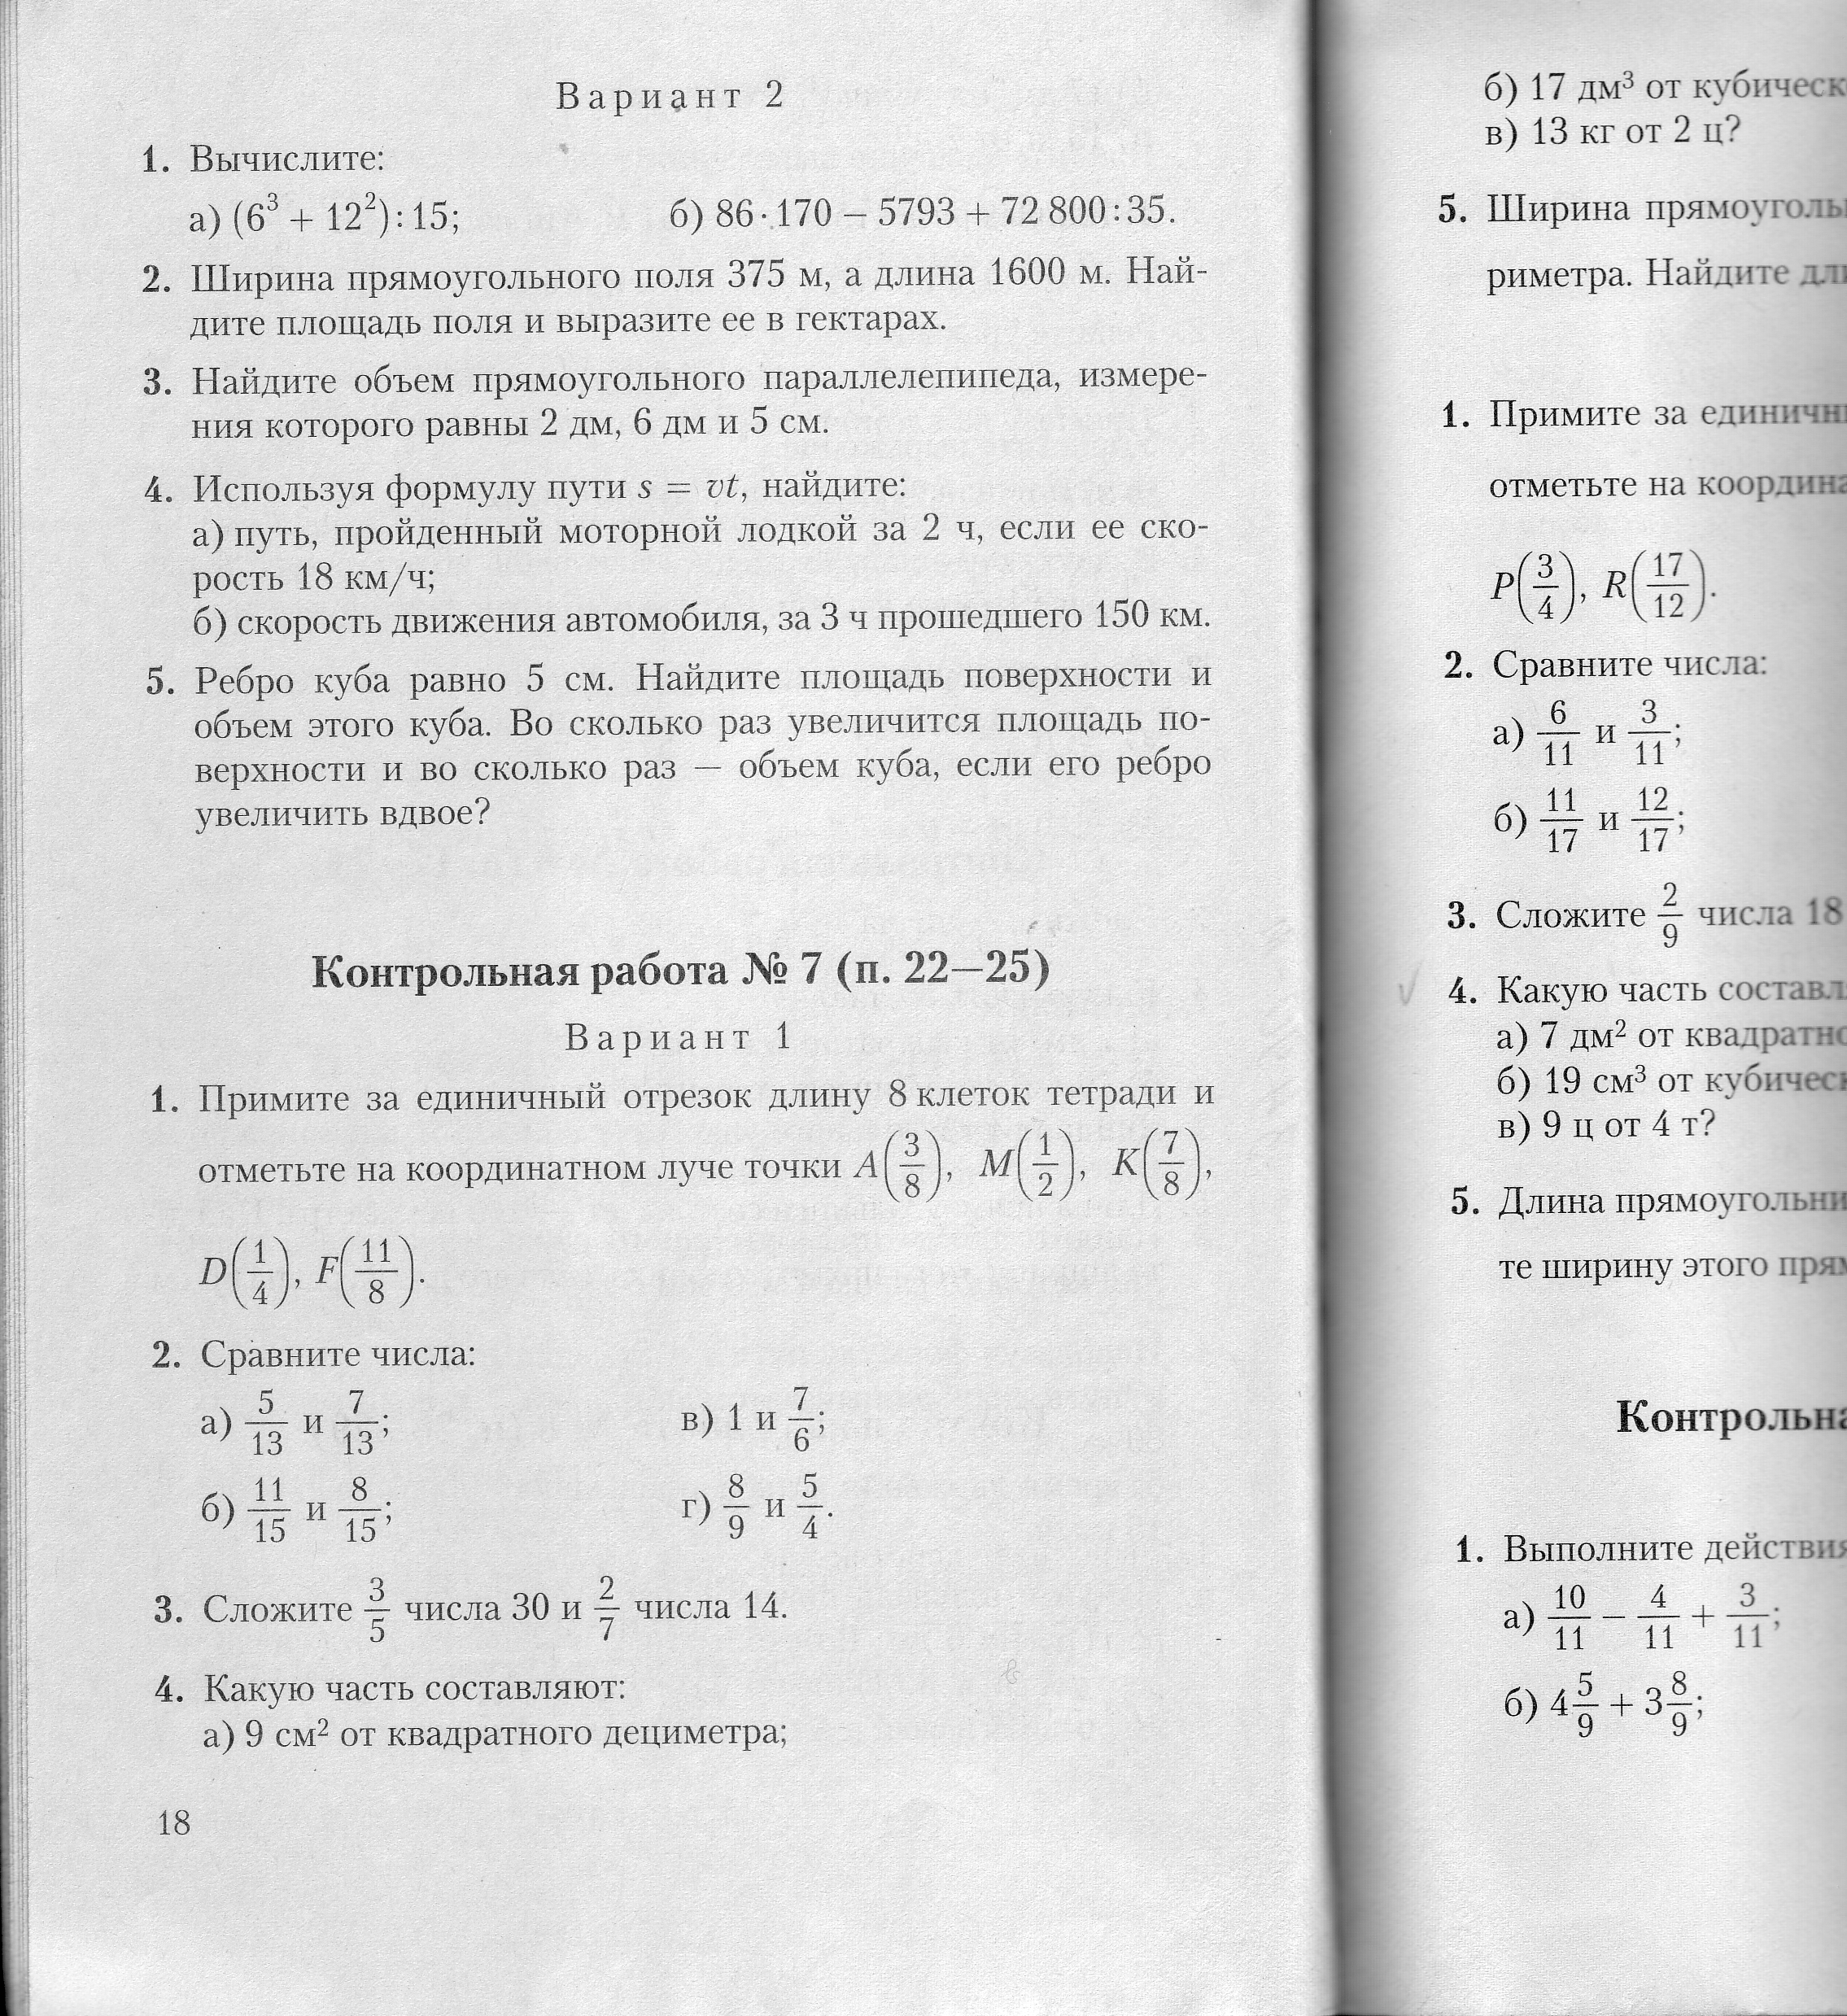 Рабочая программа по математике для индивидуально обучающегося 5 класса к УМК Виленкина